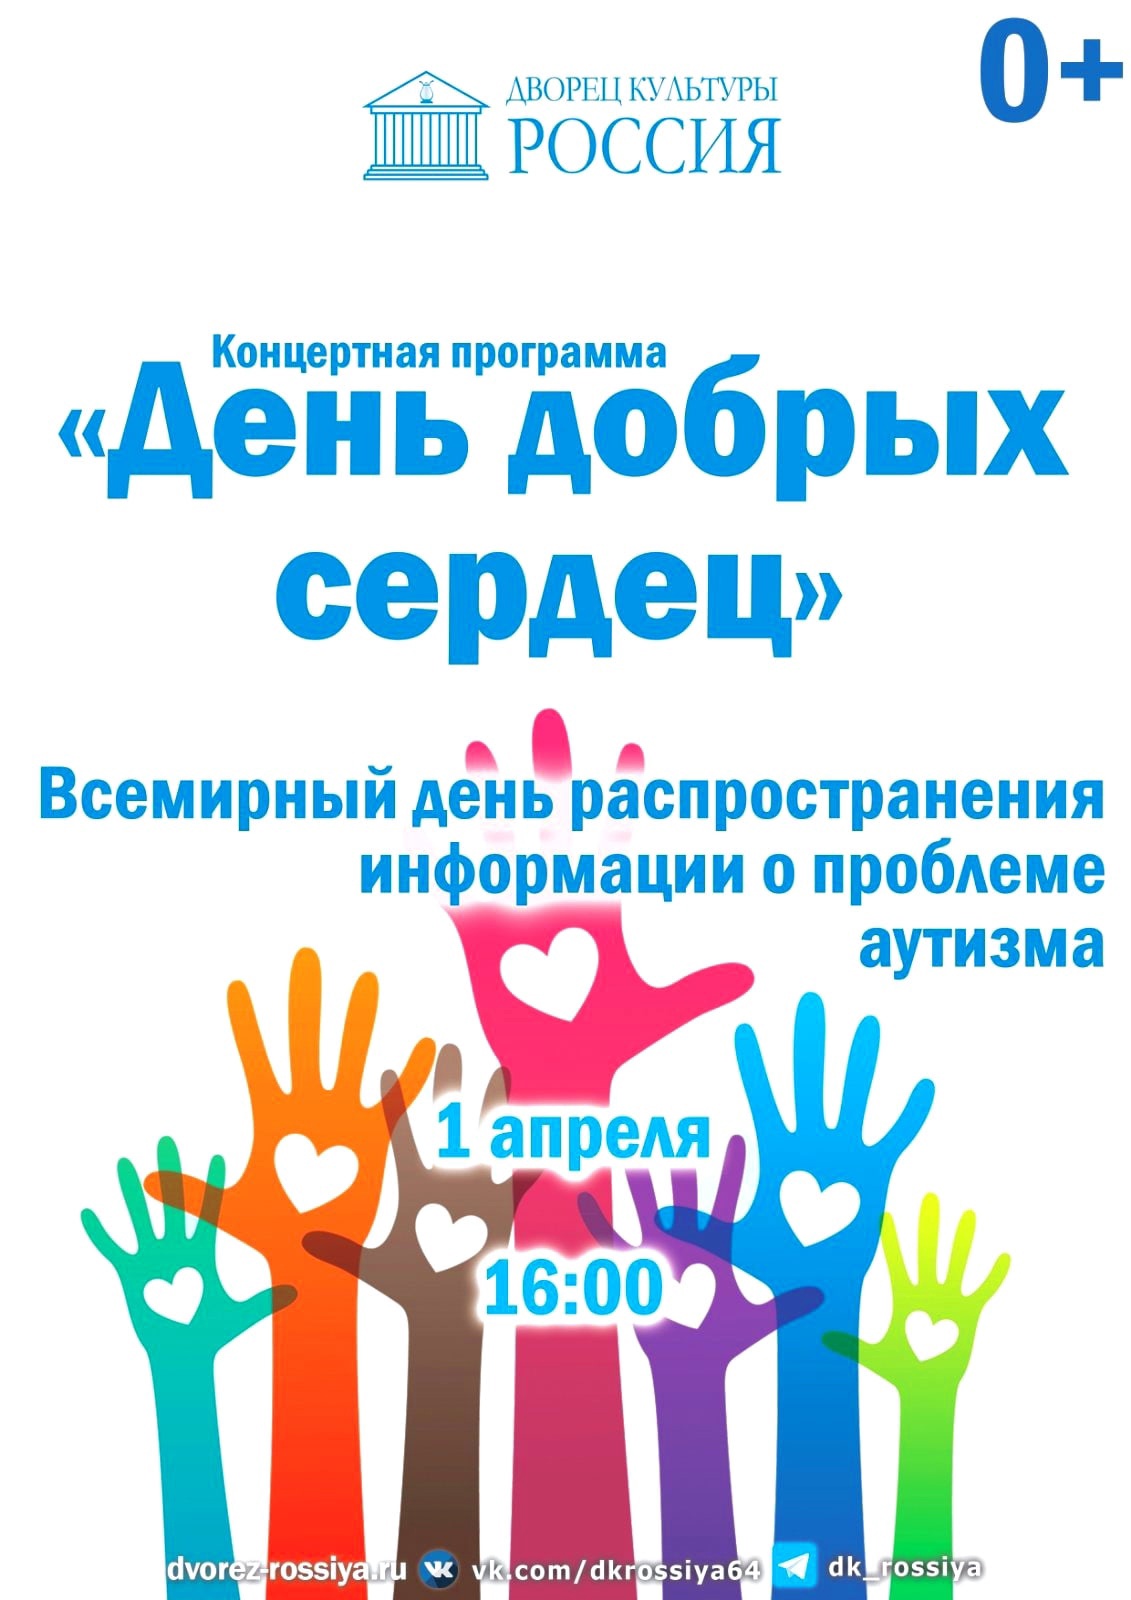 1 апреля в ДК "Россия" состоится благотворительный концерт "День добрых сердец"